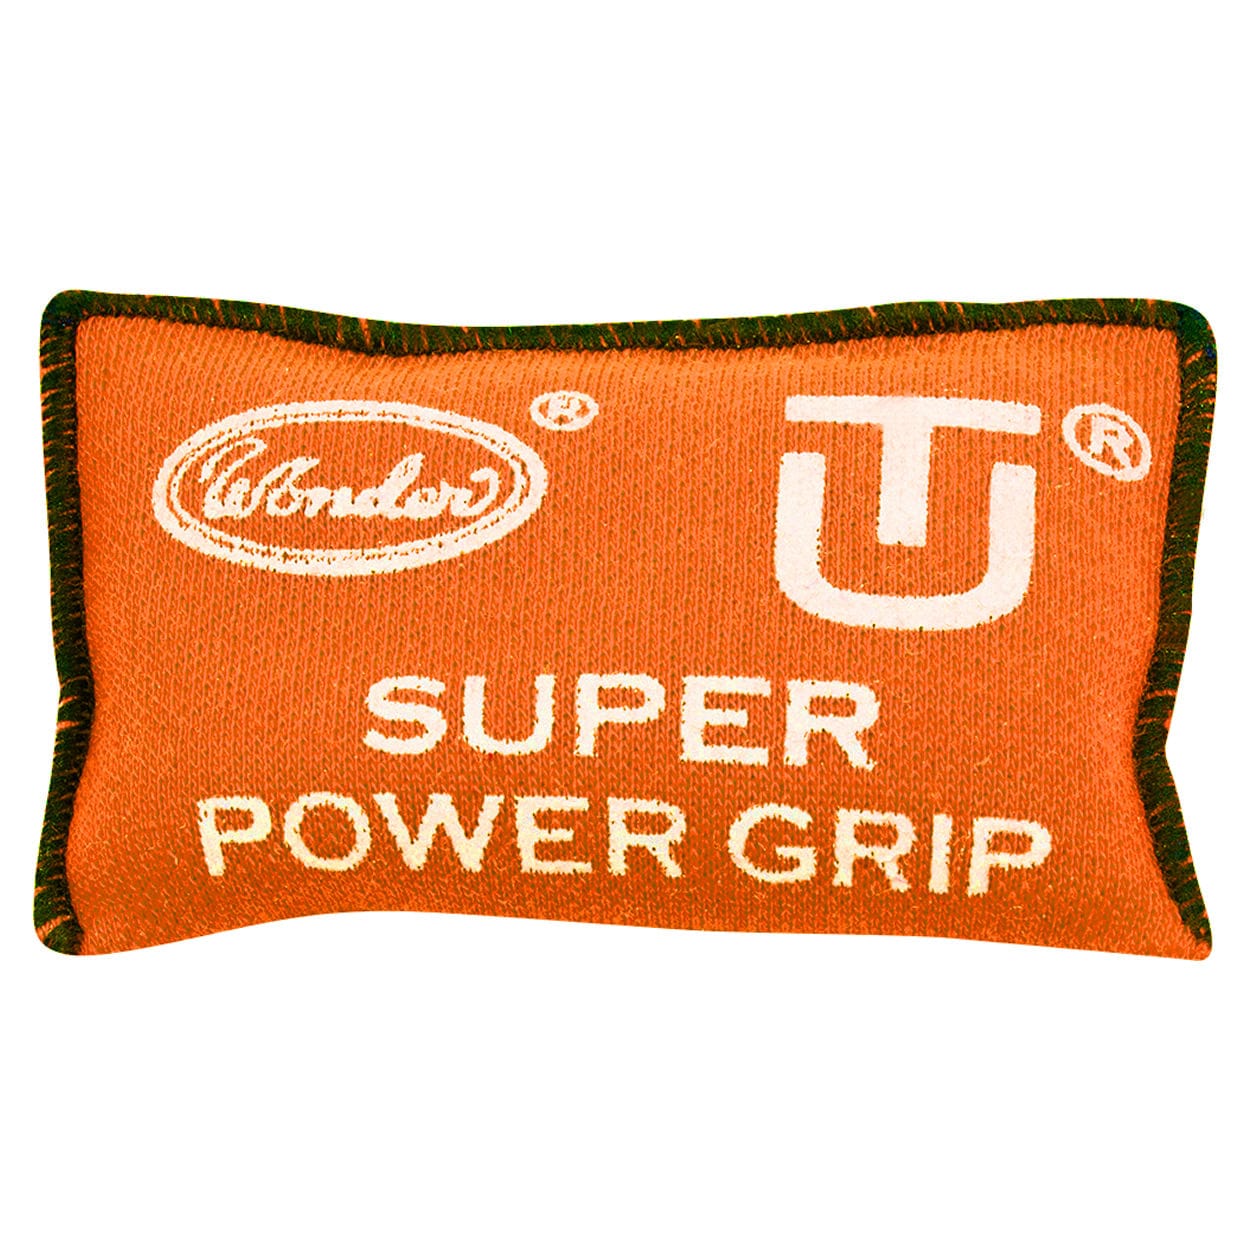 Designa Super Power Grip Bag - For Better Grip Dart Control - Absorbs Moisture Orange